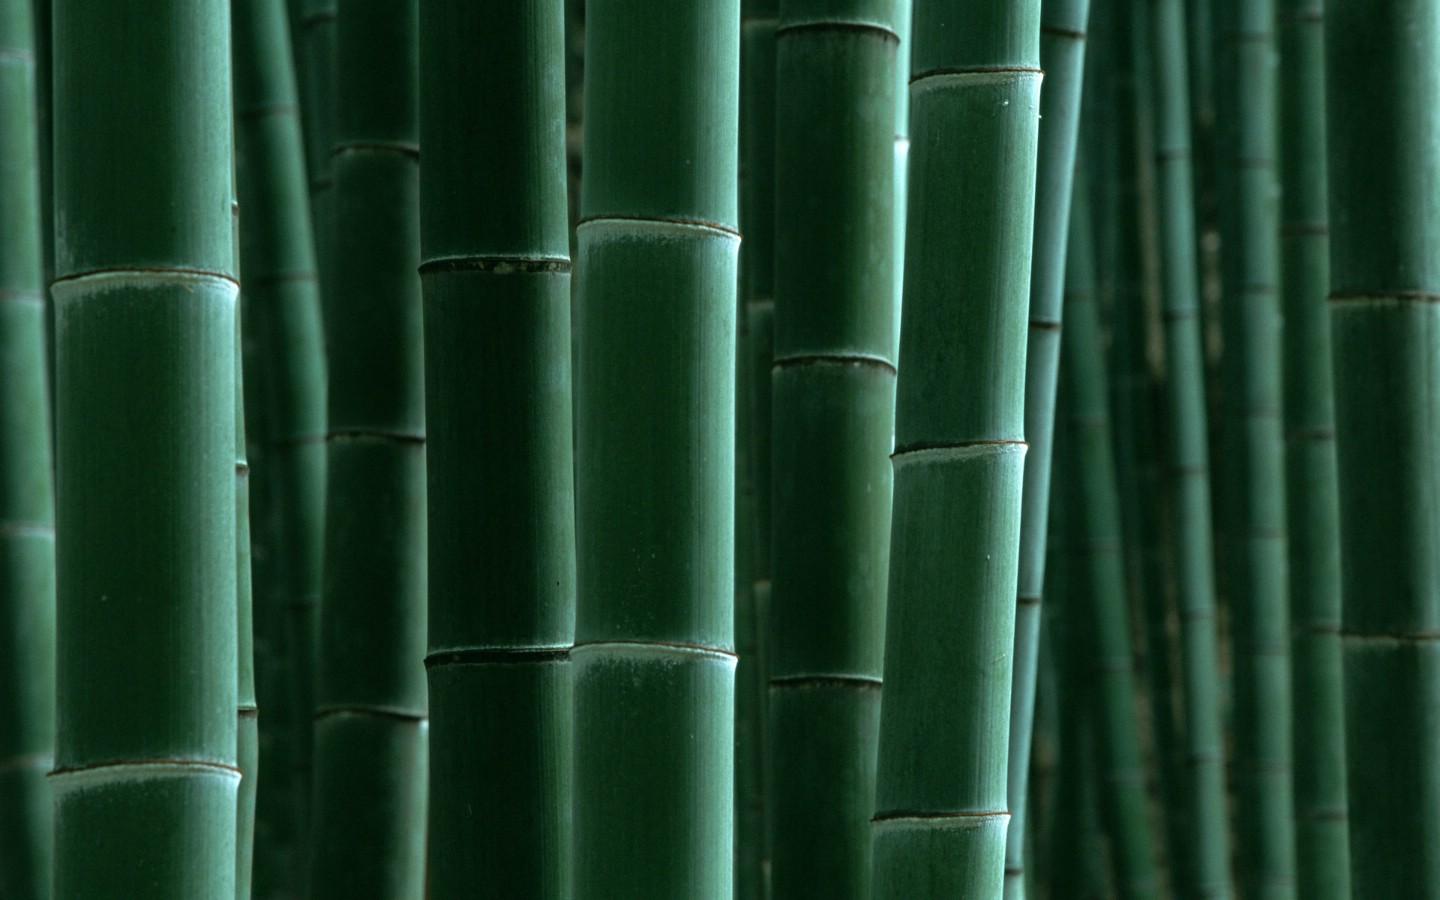 壁纸1440x900绿色竹情壁纸壁纸 绿色竹情壁纸壁纸 绿色竹情壁纸图片 绿色竹情壁纸素材 植物壁纸 植物图库 植物图片素材桌面壁纸